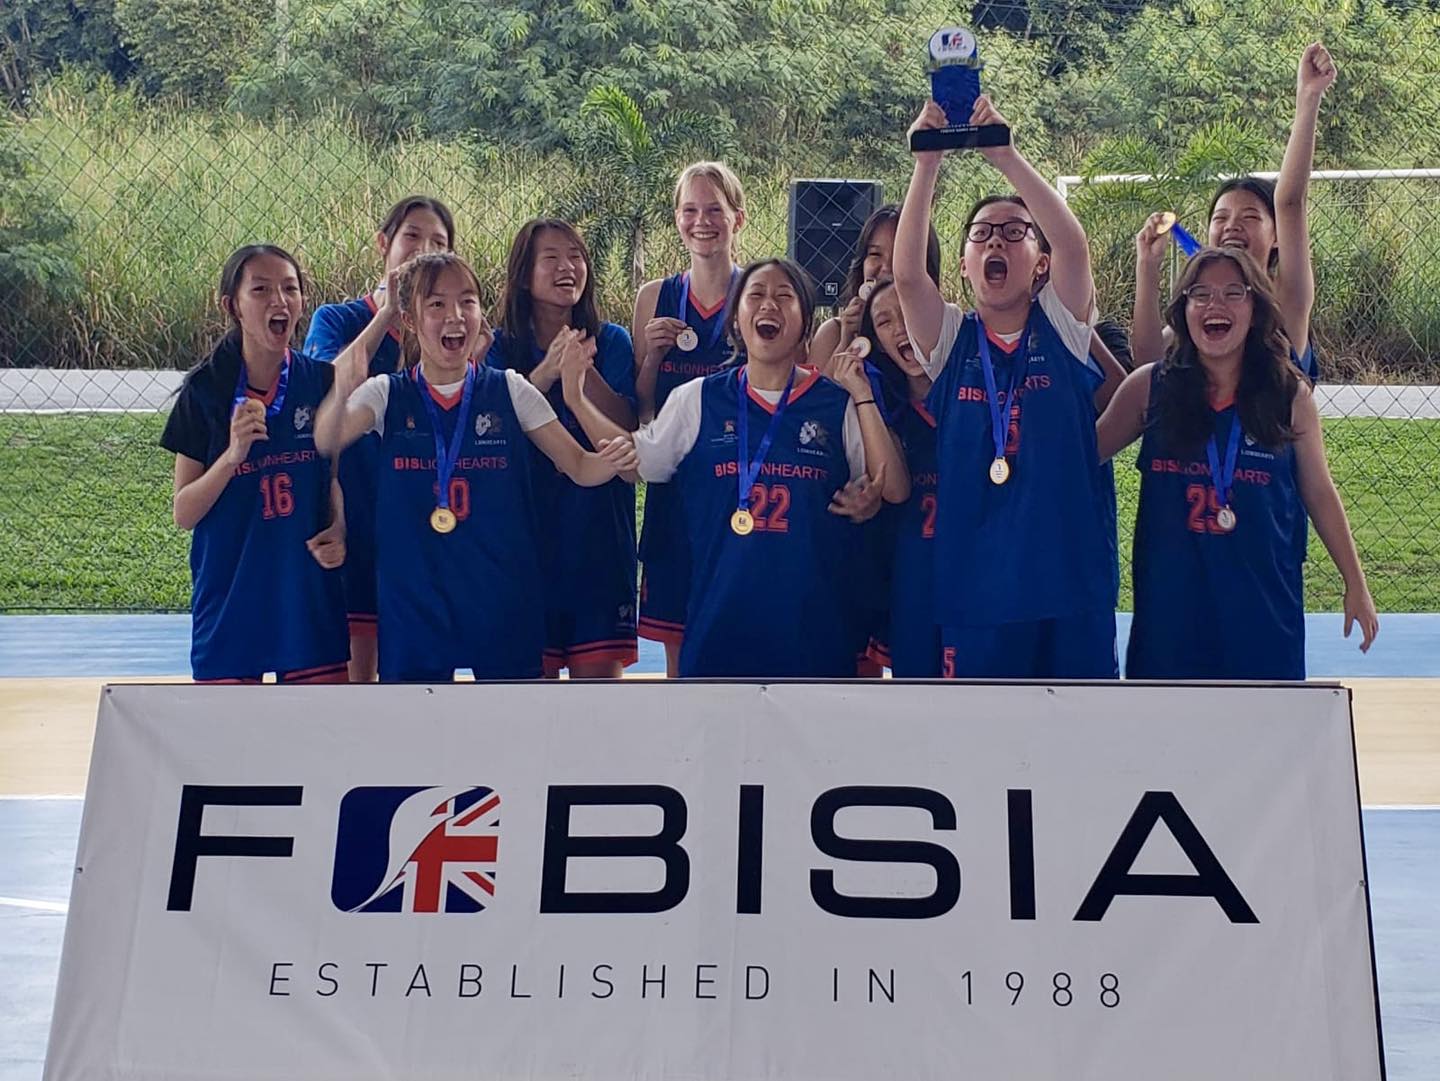 Đội tuyển U15 BIS đạt thành tích ấn tượng tại giải đấu FOBISIA Games 2023 ở Thái Lan | Trường Quốc tế Anh BIS Hà Nội - BIS U15 Team Makes Waves at FOBISIA Games in Thailand